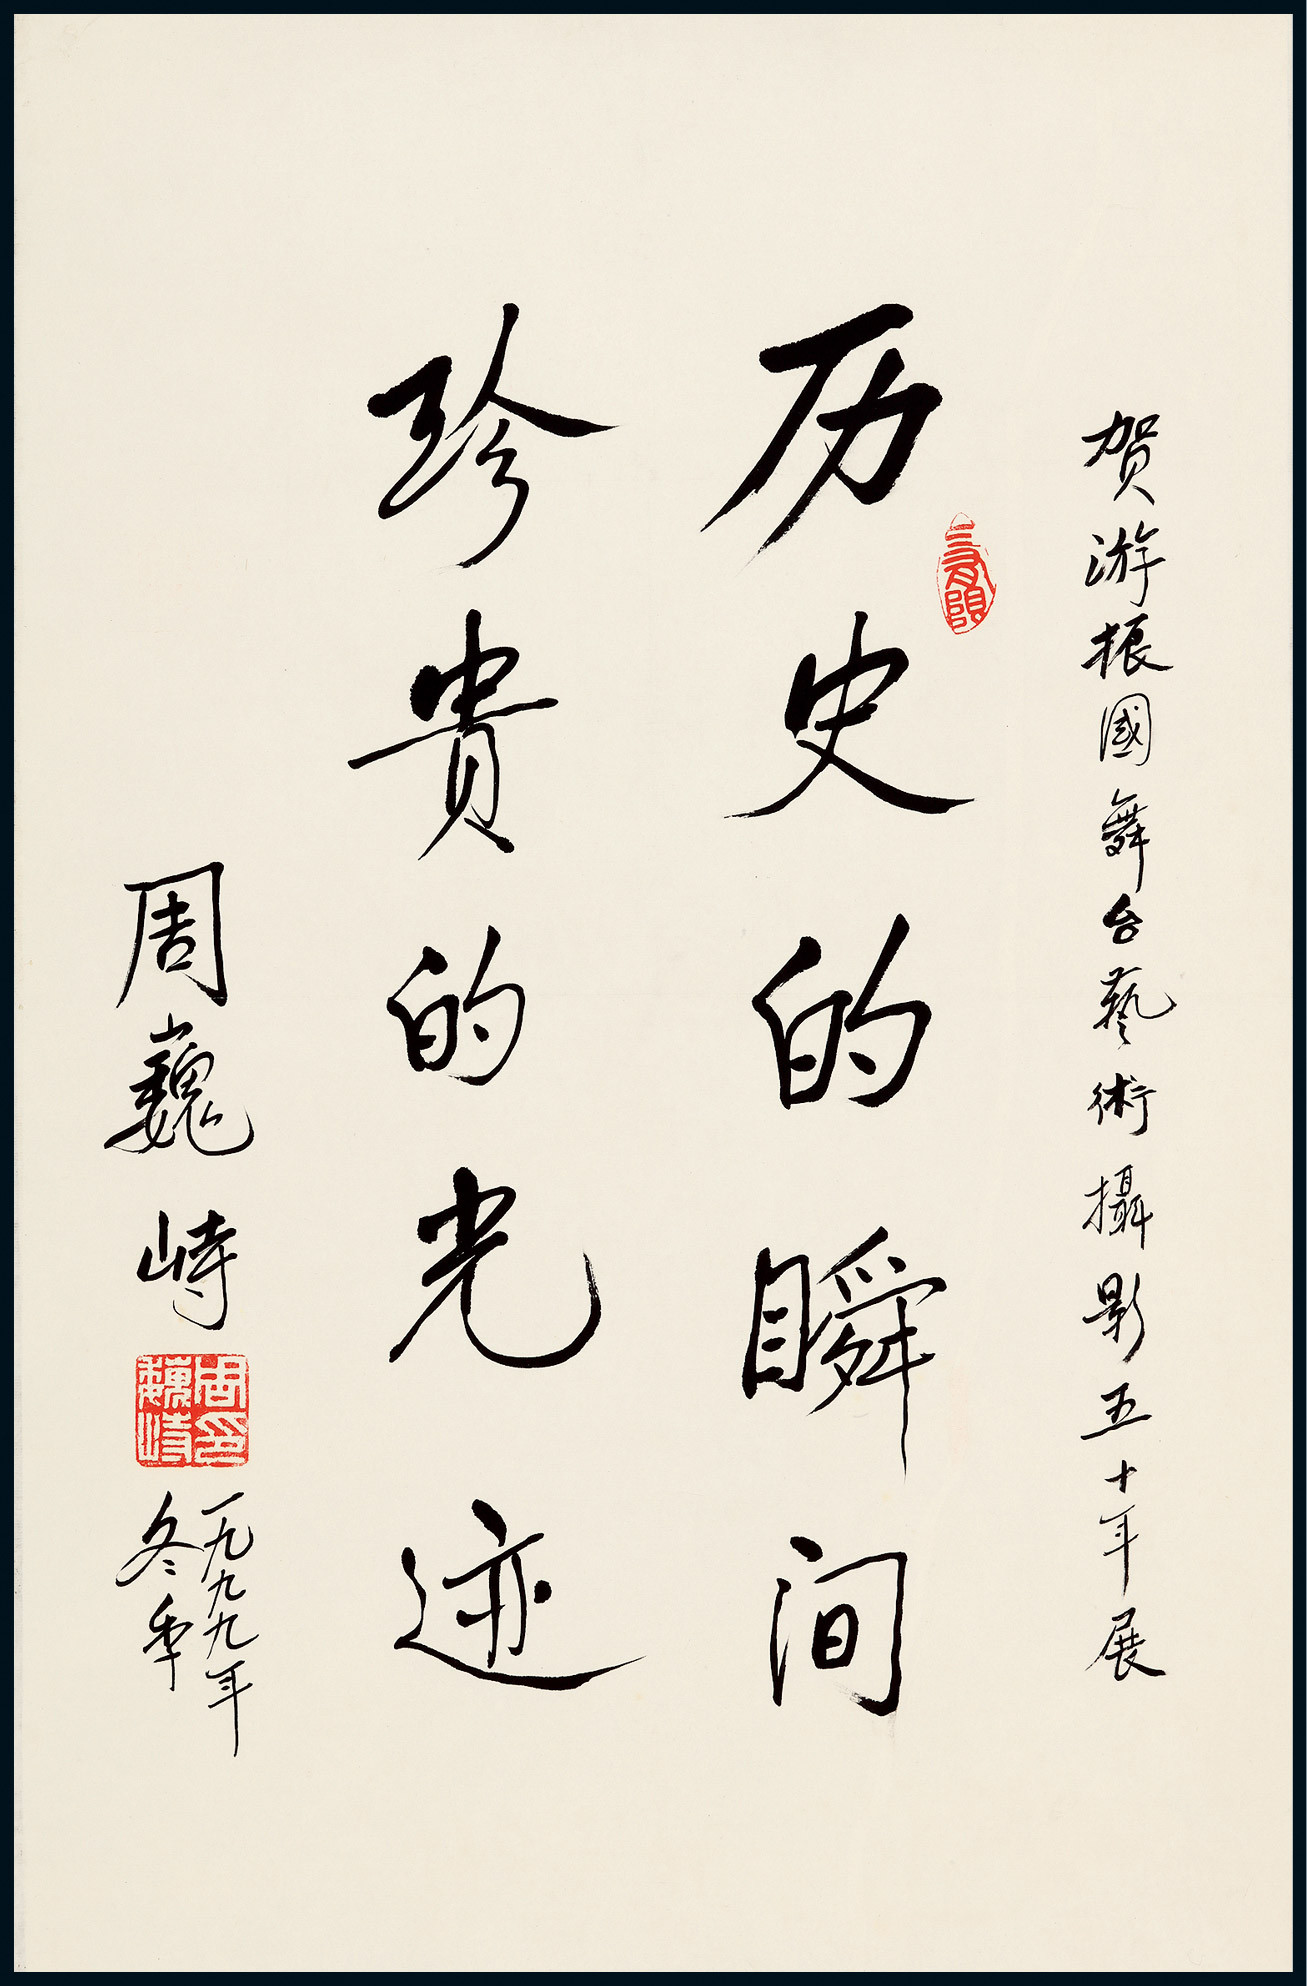 The calligraphy of Zhou Weizhi